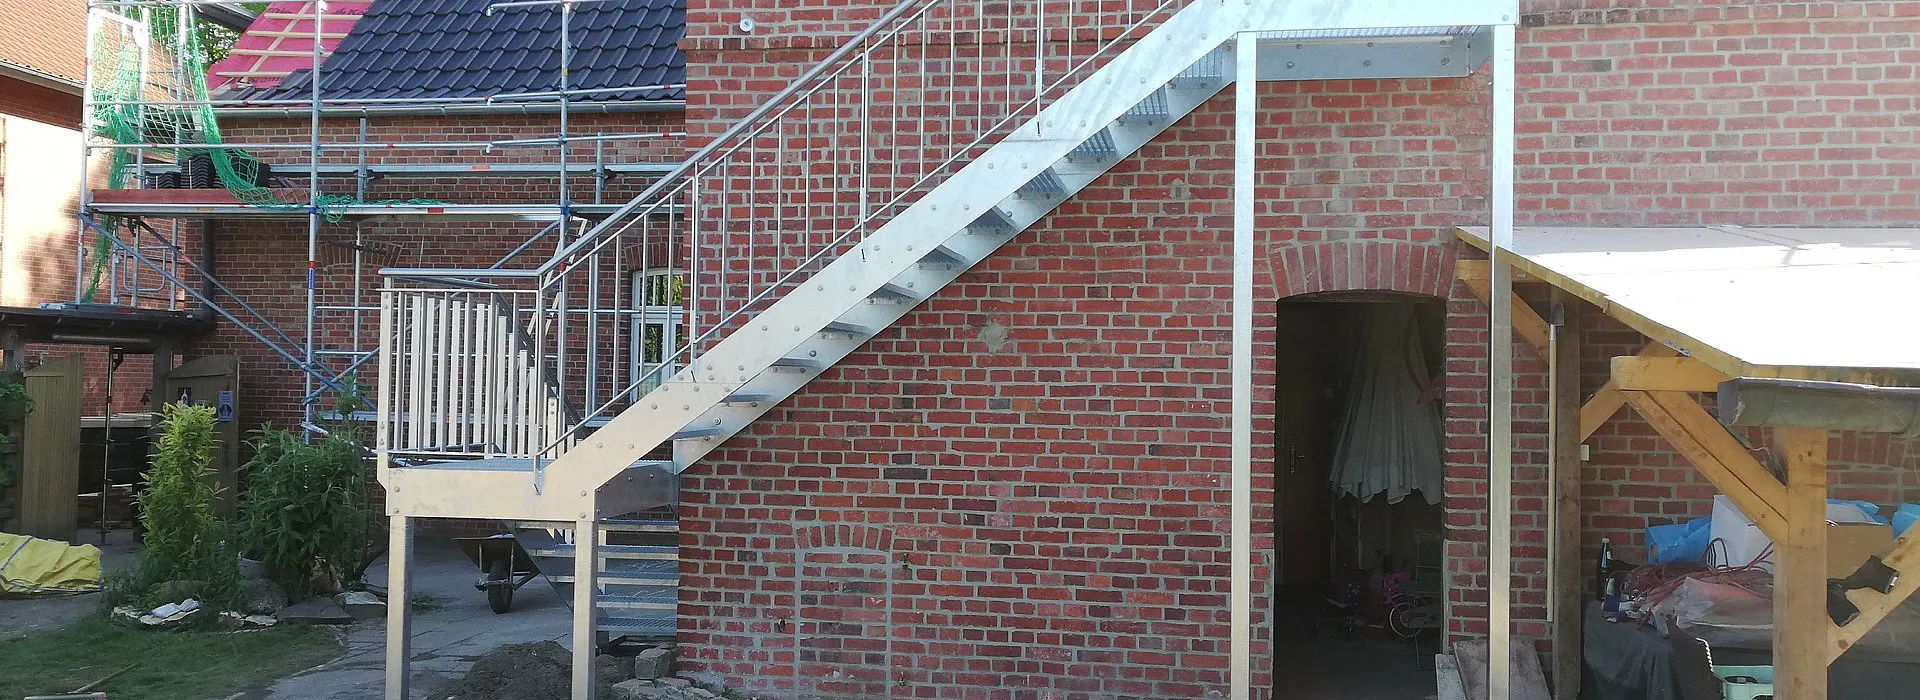 Outdoor Stahltreppe in silber mit Stahlgeländer an Hauswand, seitenansicht